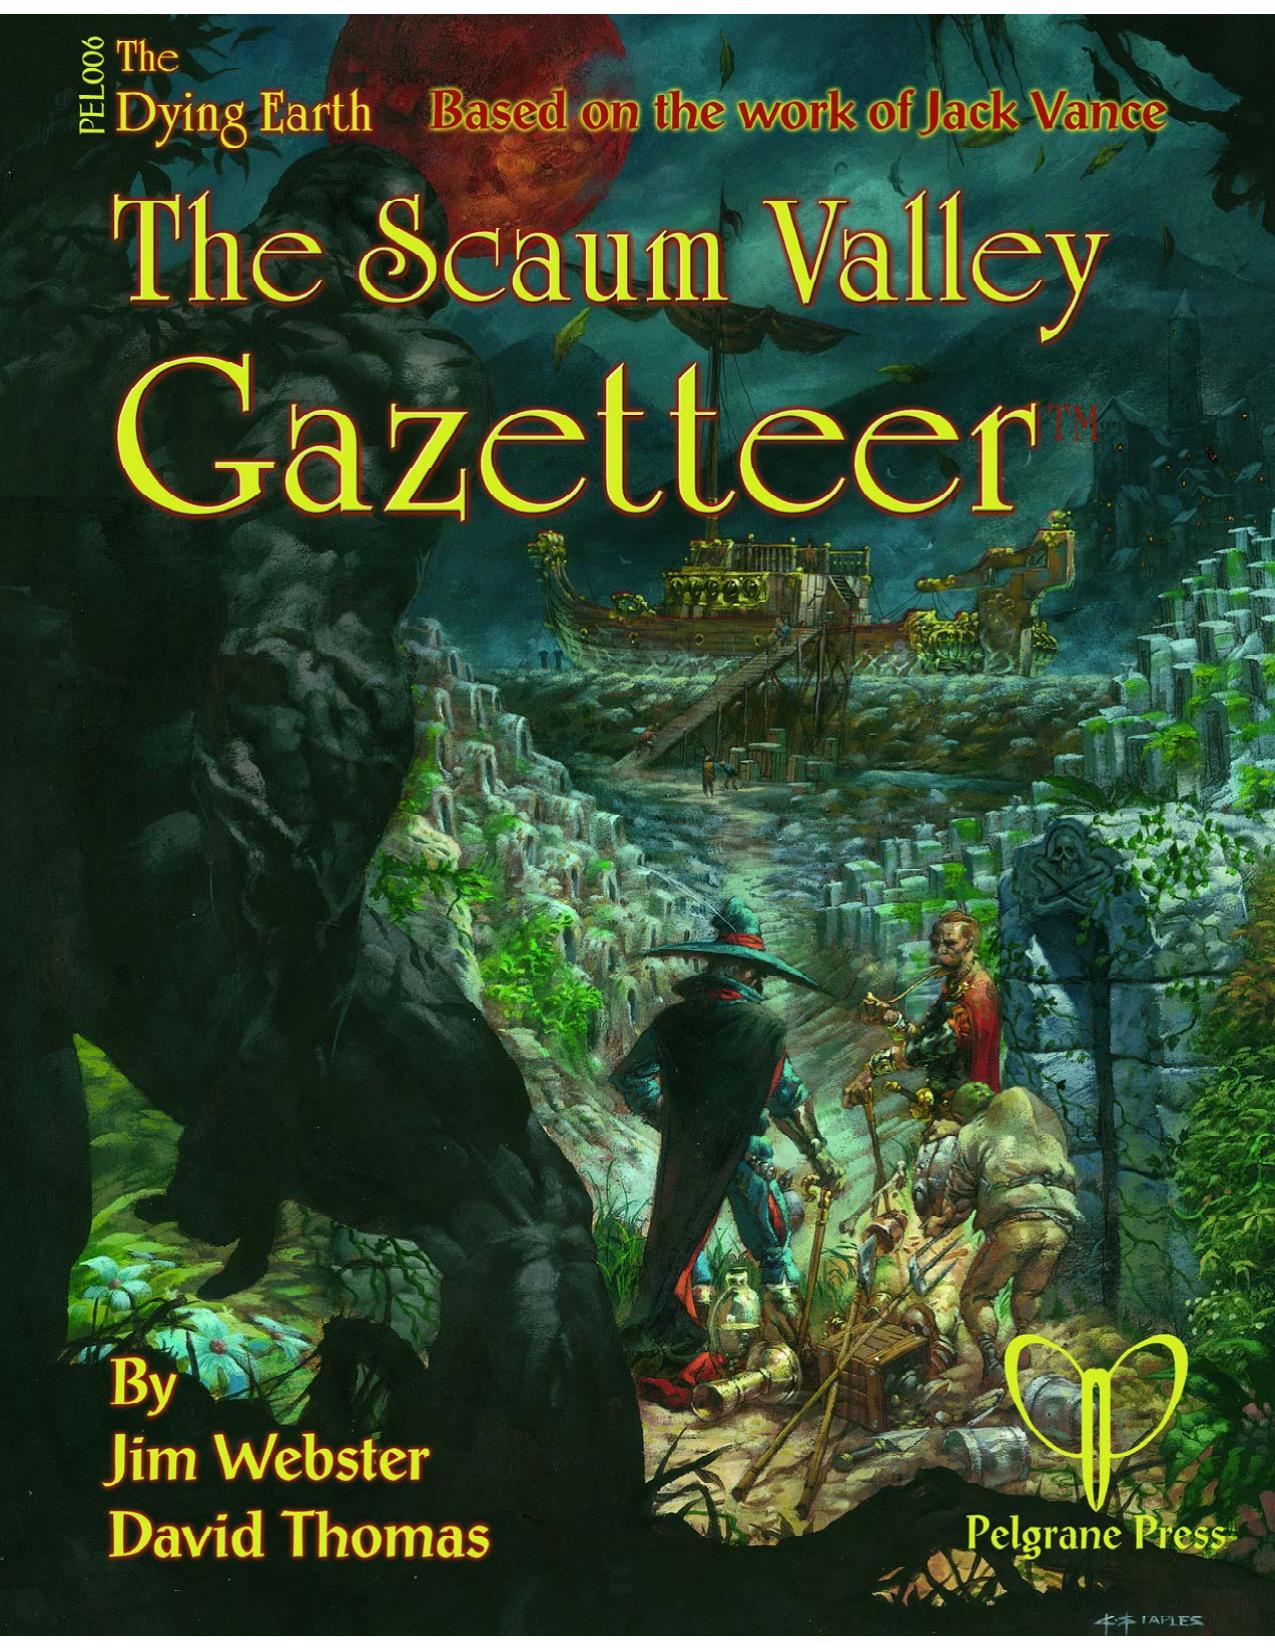 PEL006 The Scaum Valley Gazetteer